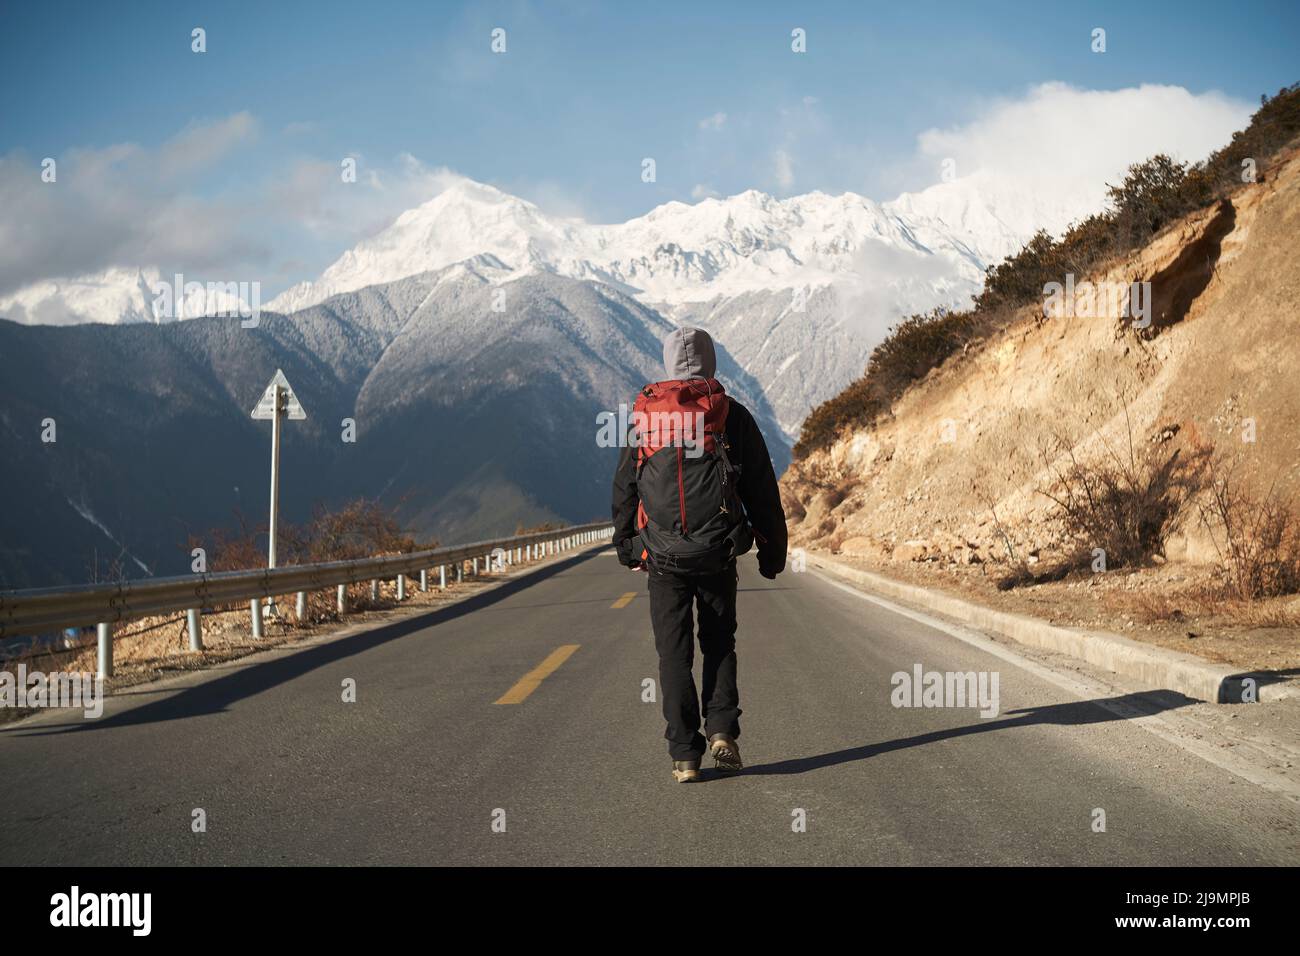 vue arrière d'un randonneur asiatique avec marche à dos sur l'autoroute avec montagne meili enneigée en arrière-plan Banque D'Images